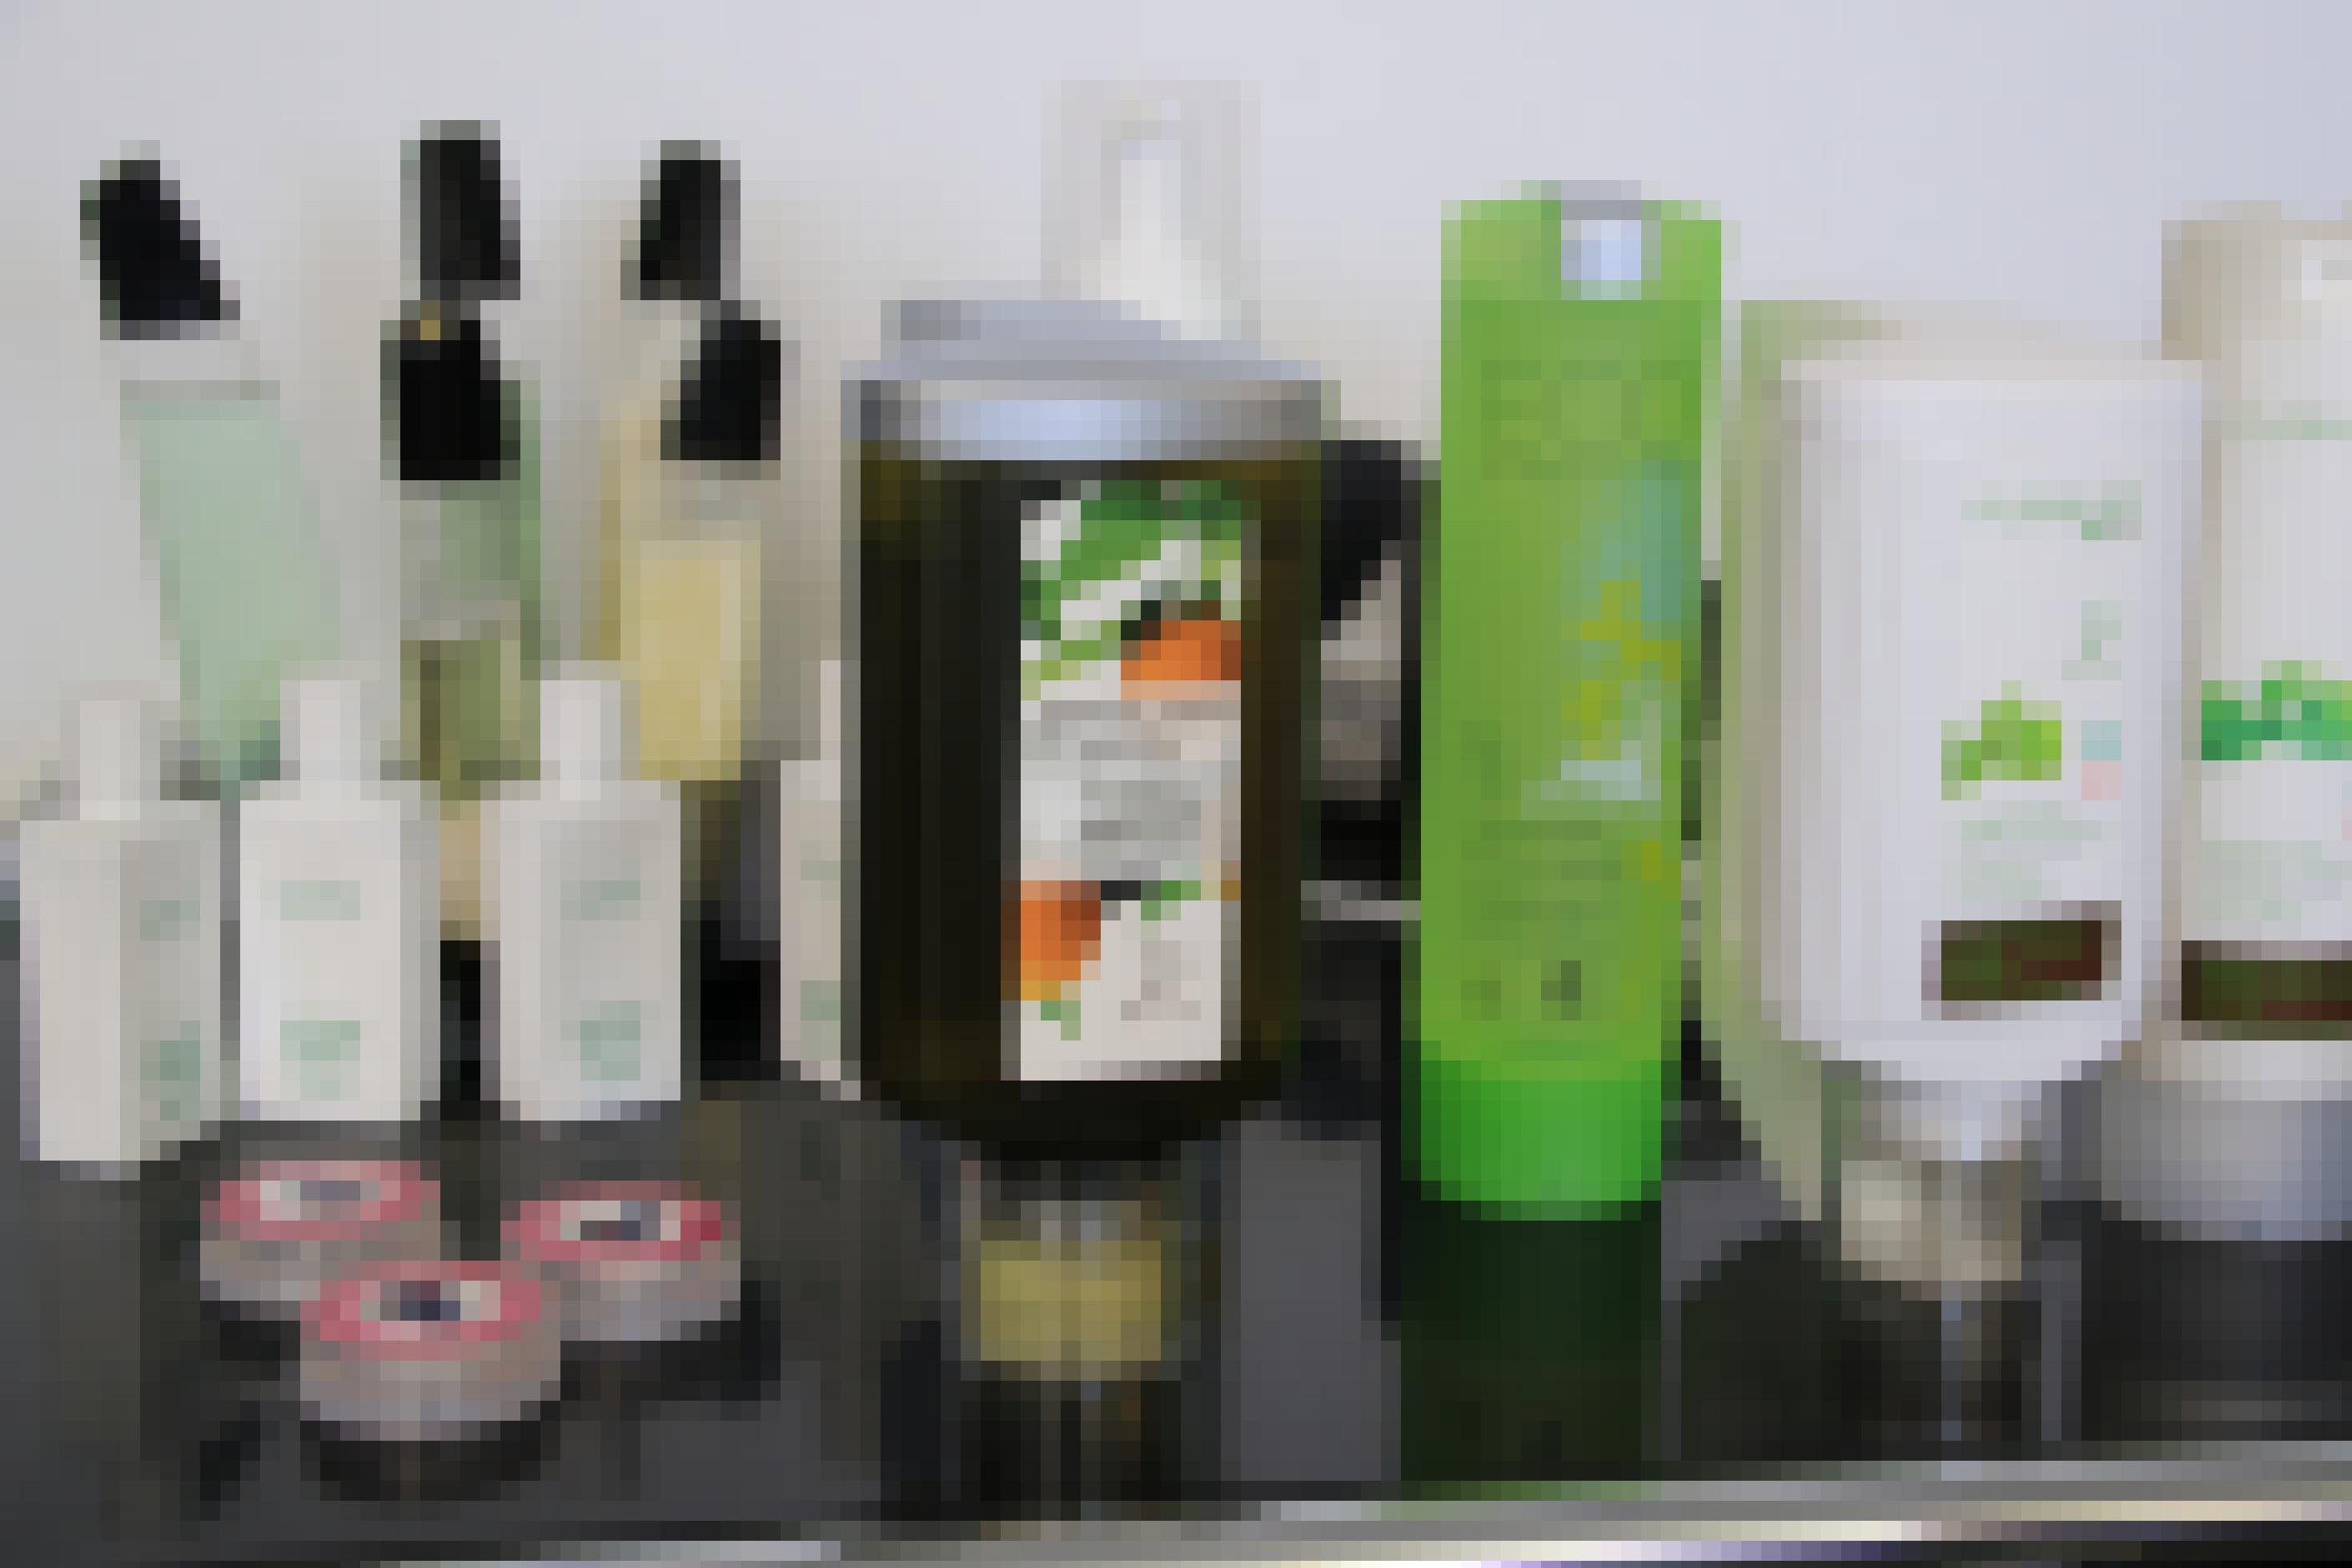 Auffüllbare Shampoo-Behälter stehen nebeneinander